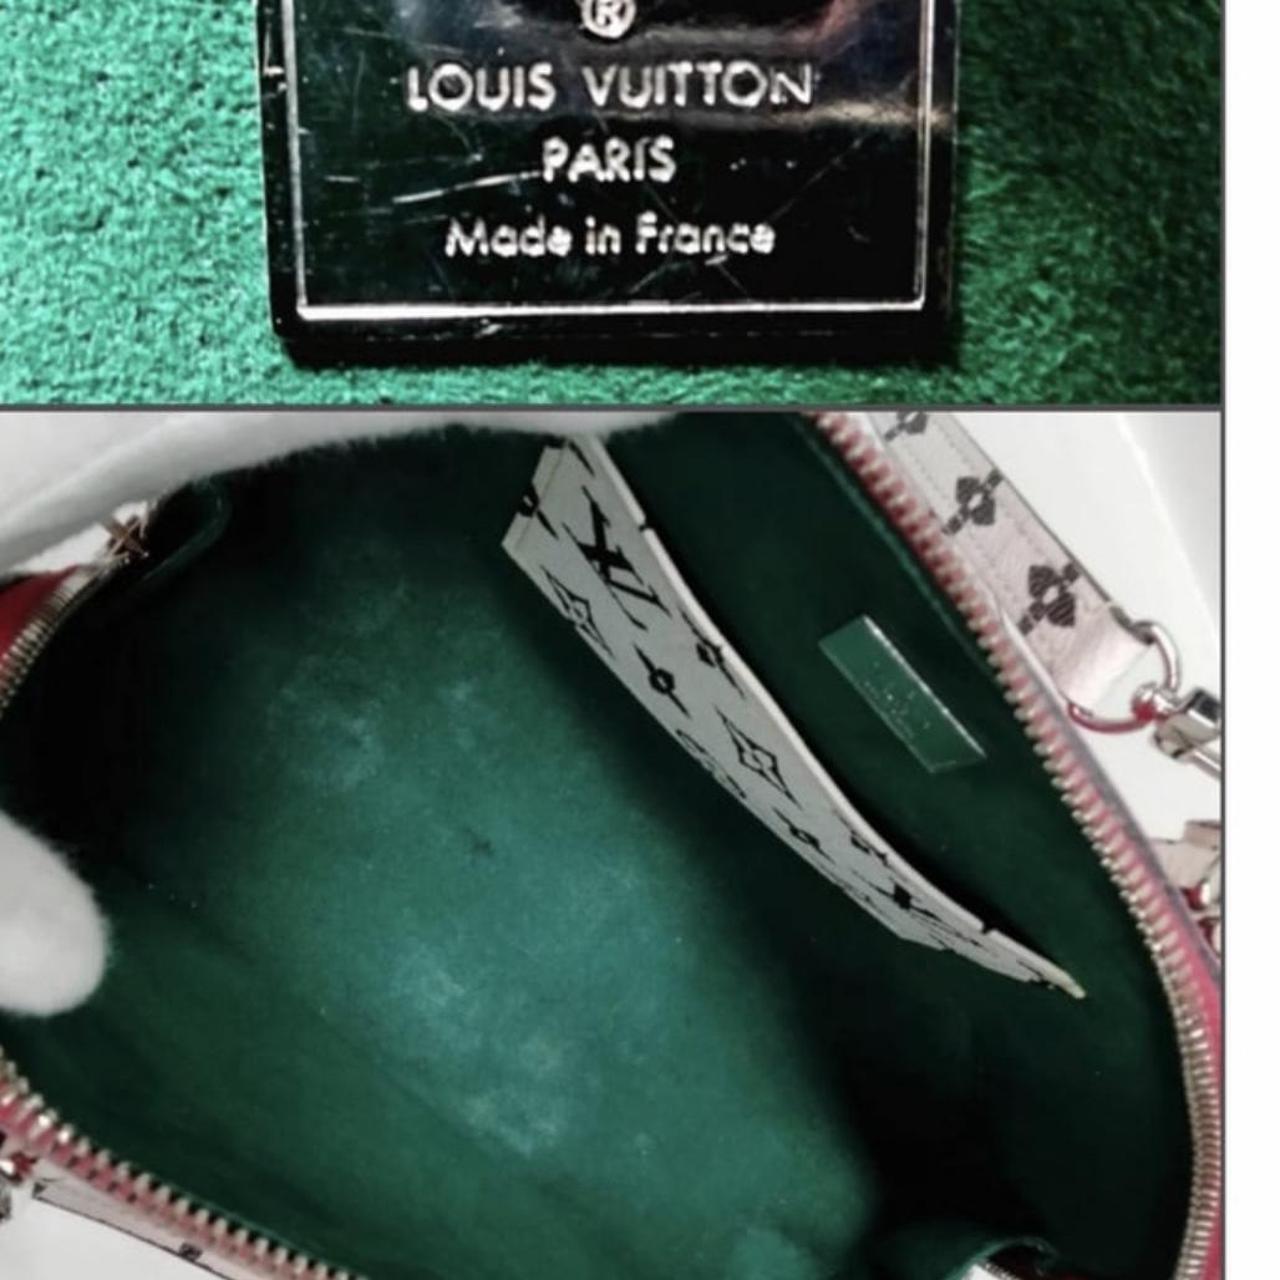 Authentic Louis Vuitton Alma bb damier ebene comes - Depop